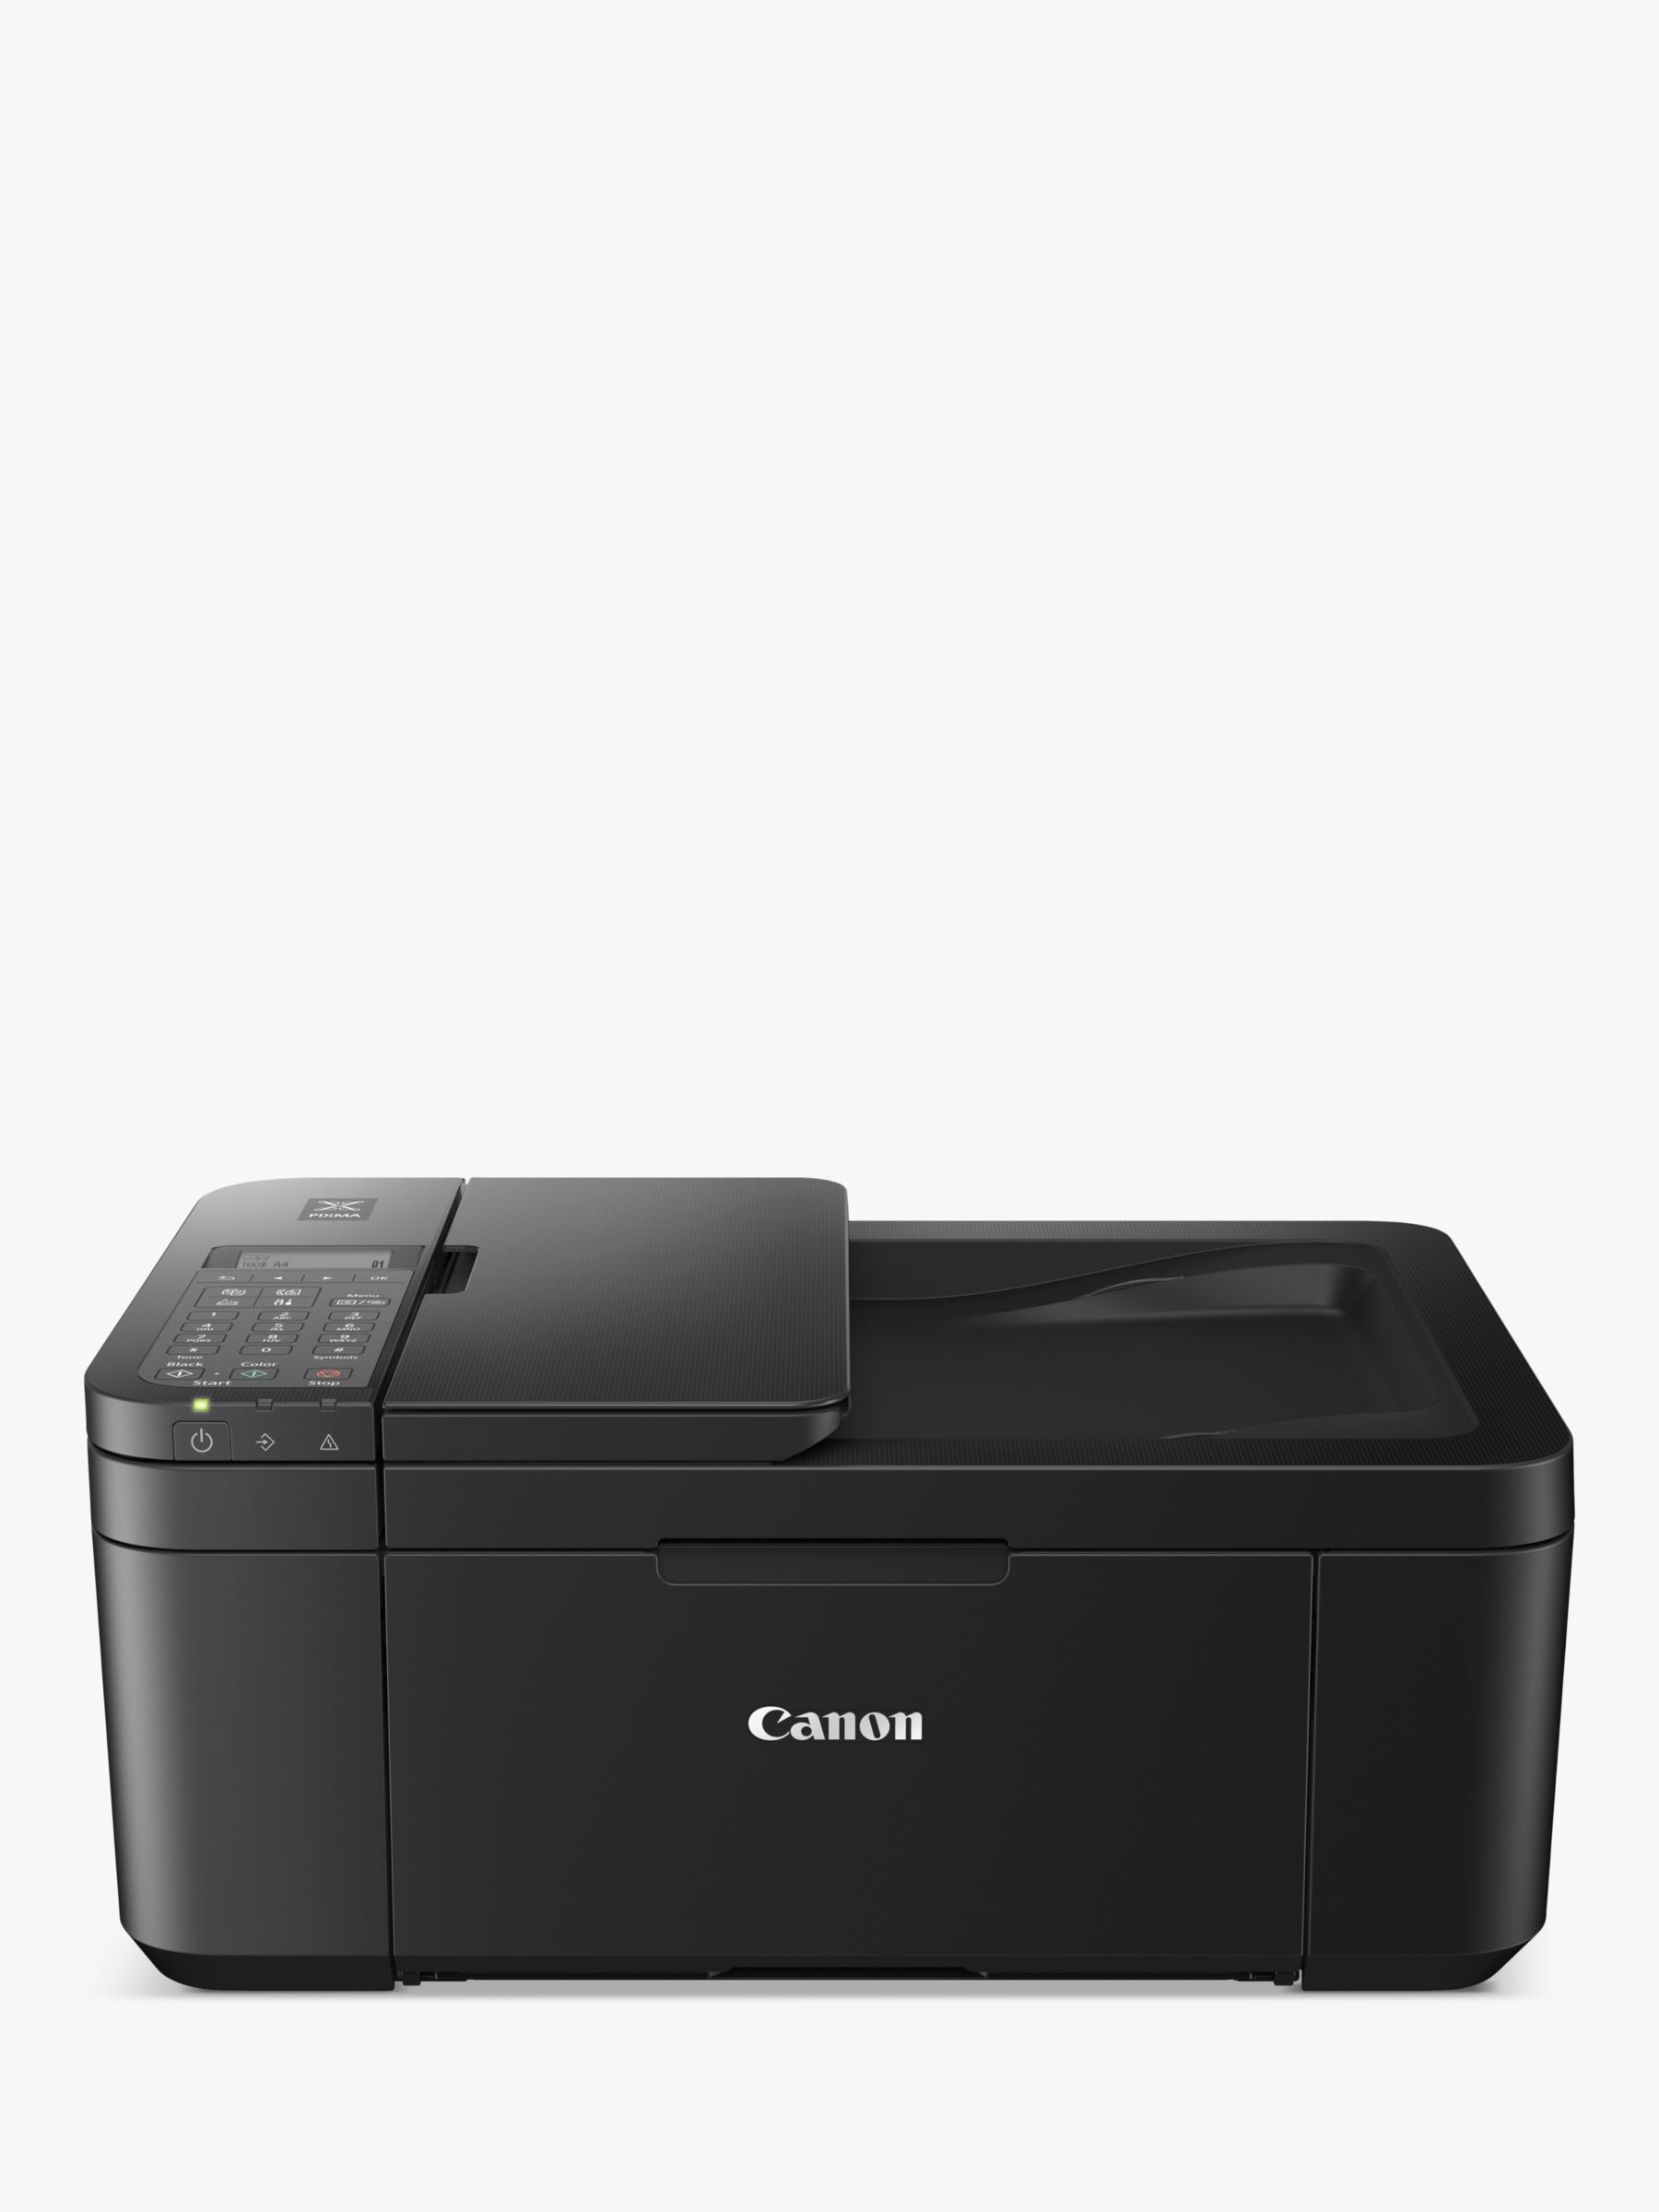 All-in-One Wi-Fi TR4750i PIXMA Printer, Canon Black Wireless